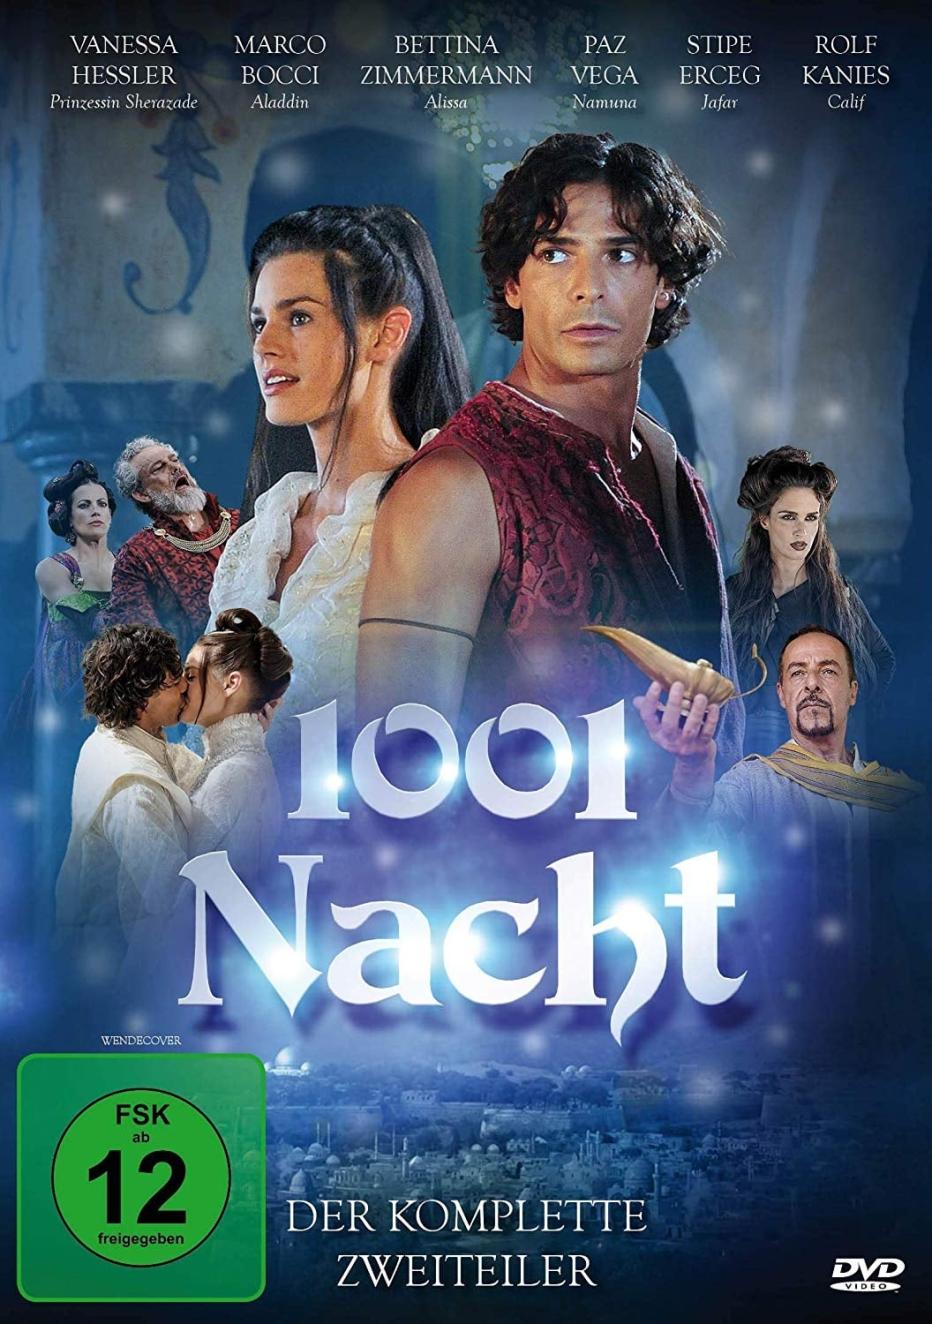 1001 Nacht | film.at